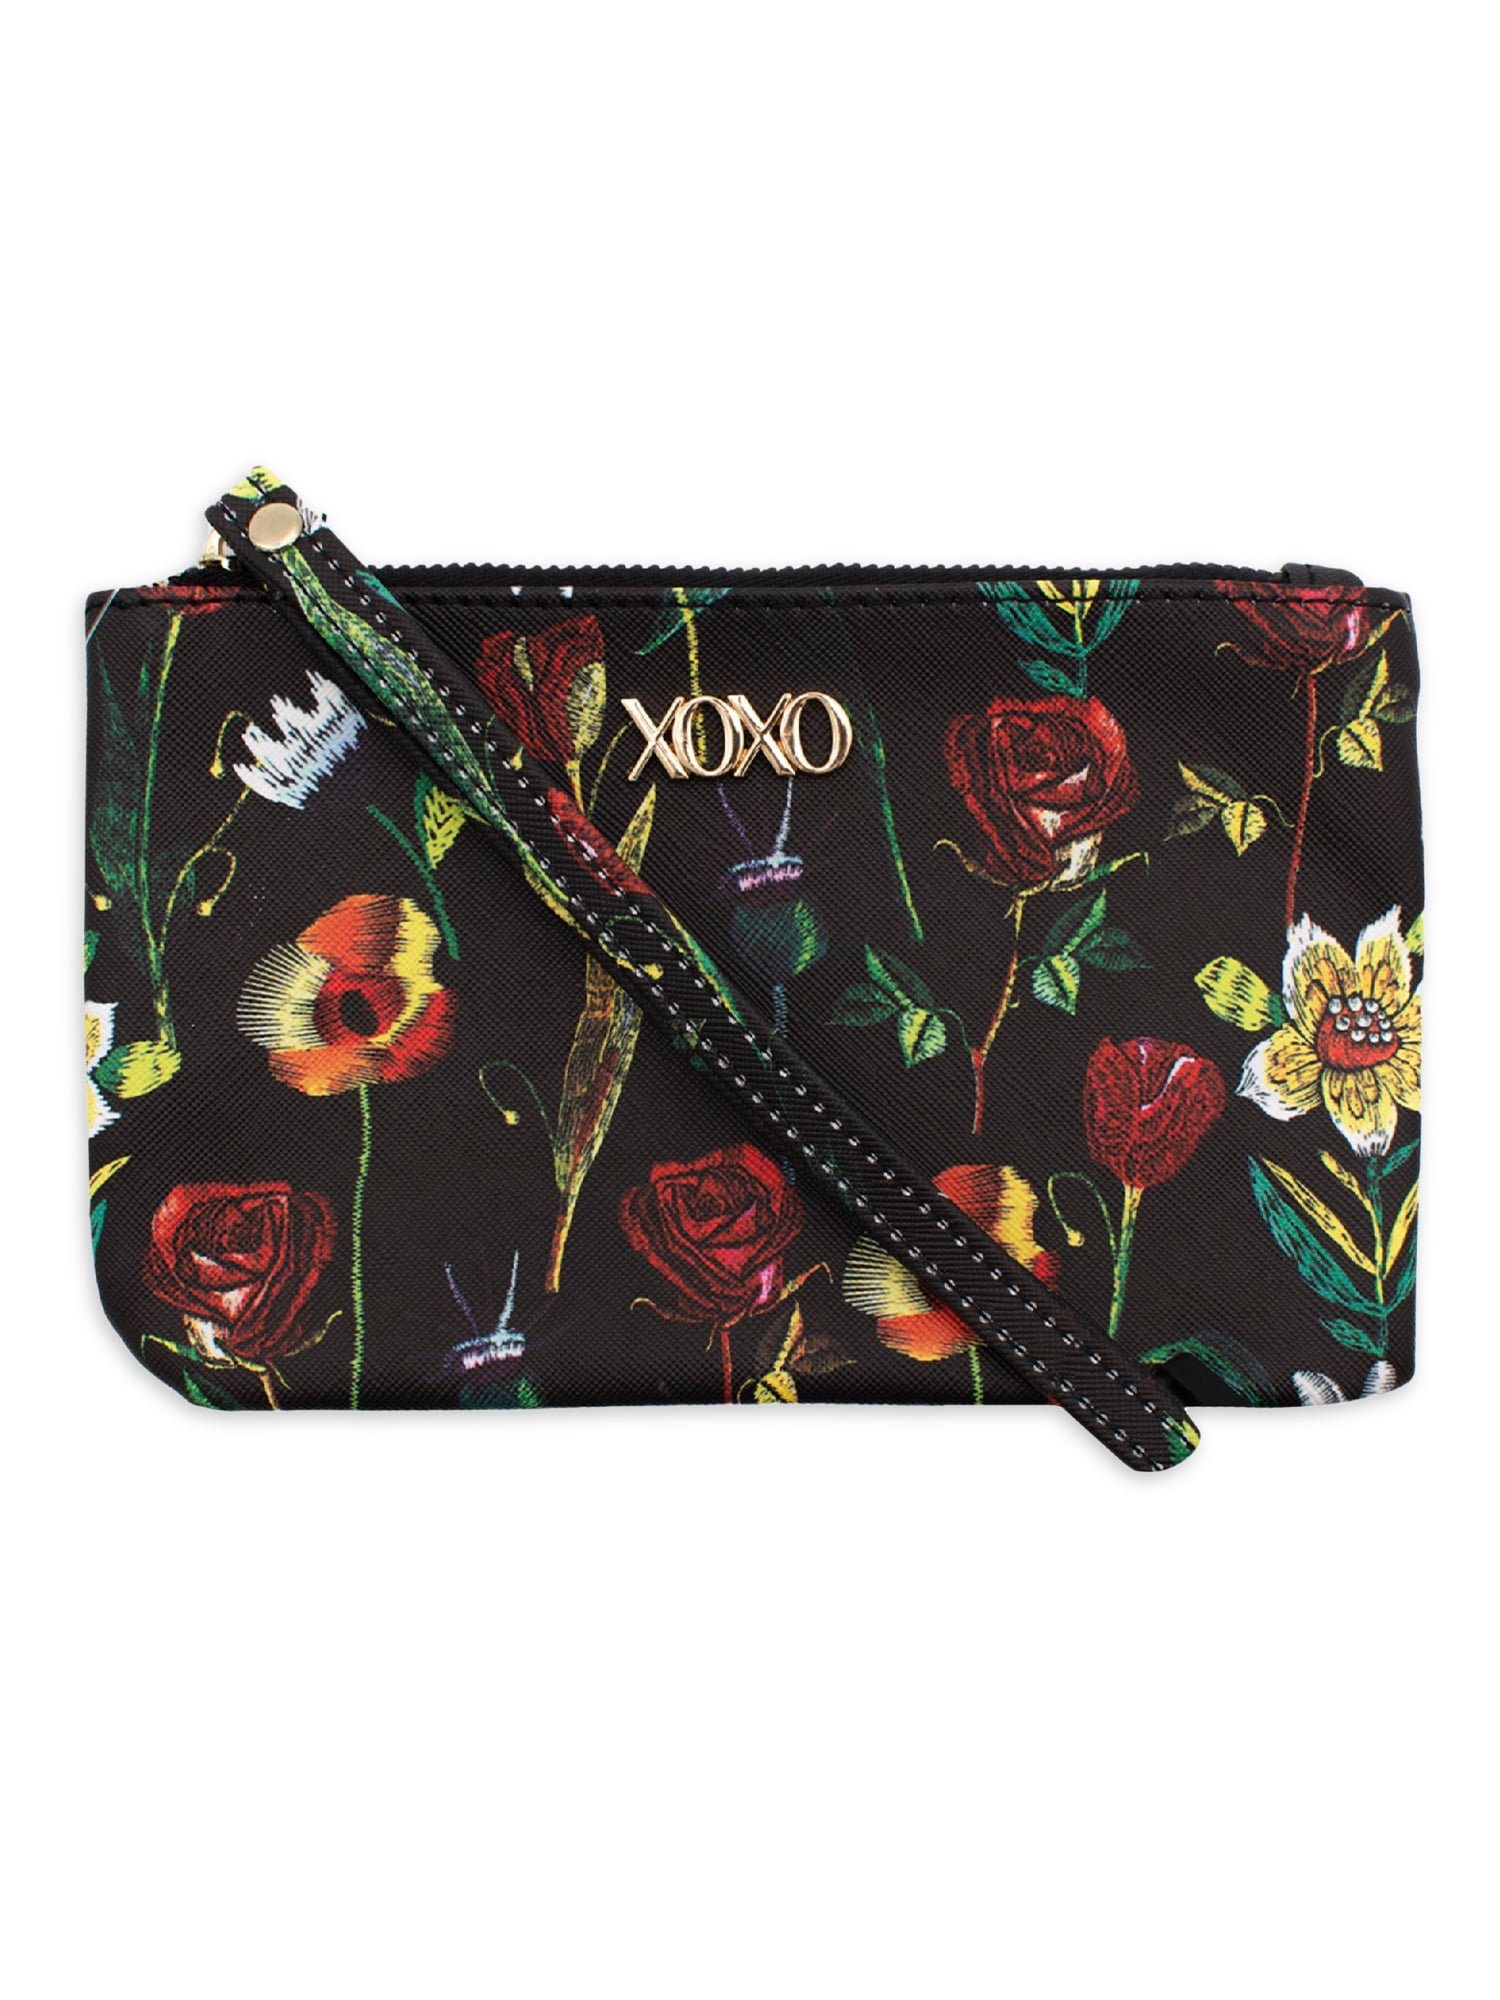 XOXO Women's Floral Print Wristlet